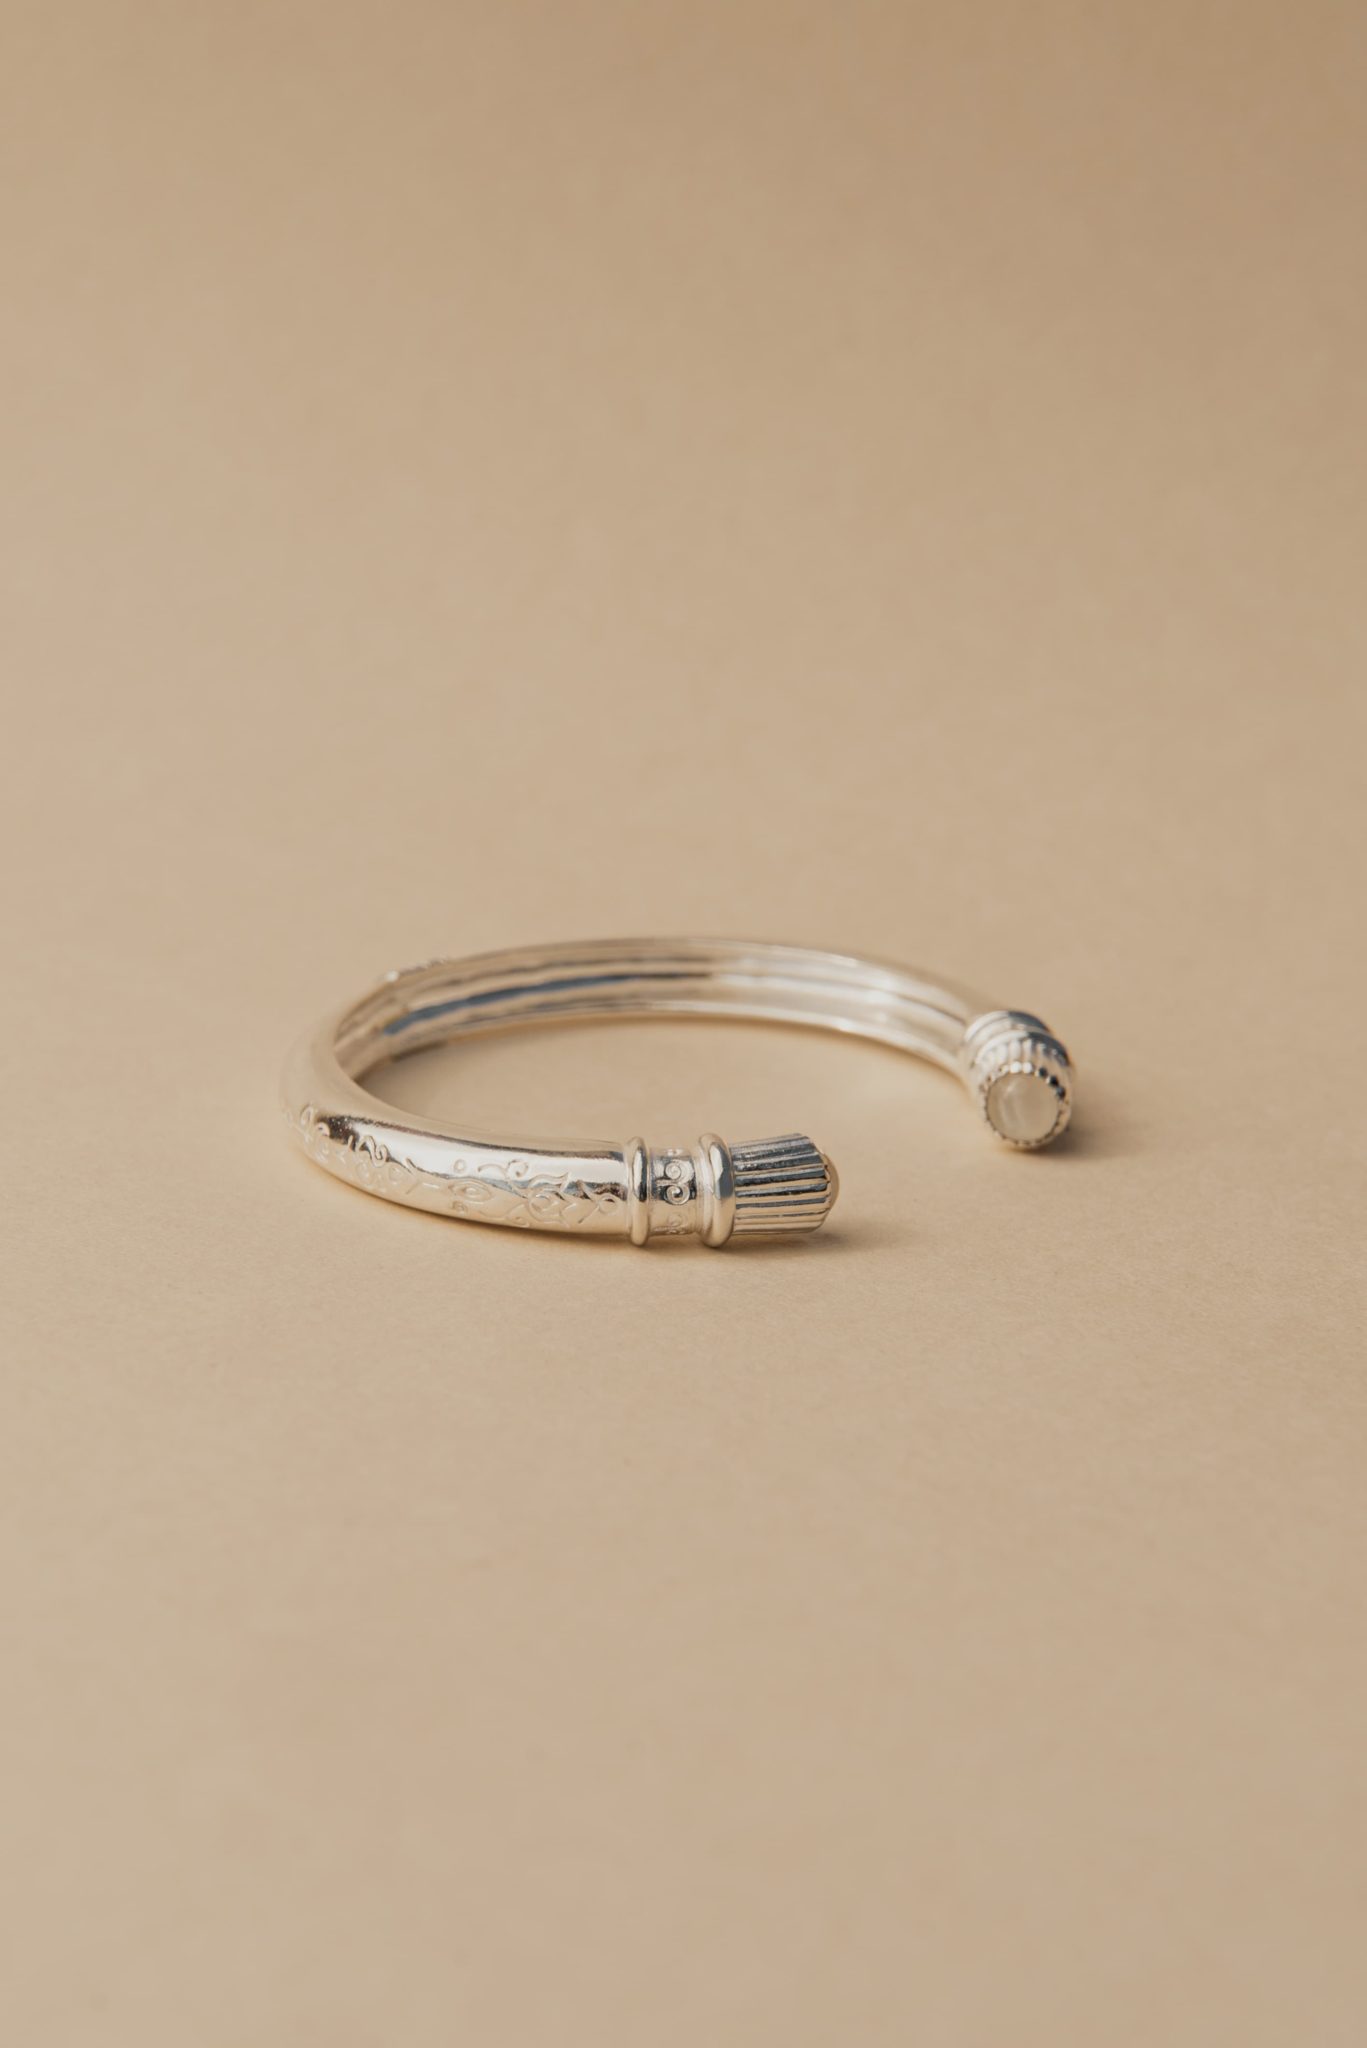 Nekala bracelet Hina vermeil or éthique symboles gravés haut de gamme luxe pierre de lune jonc creusé ethnique argent massif recyclé collection Hinode 2022